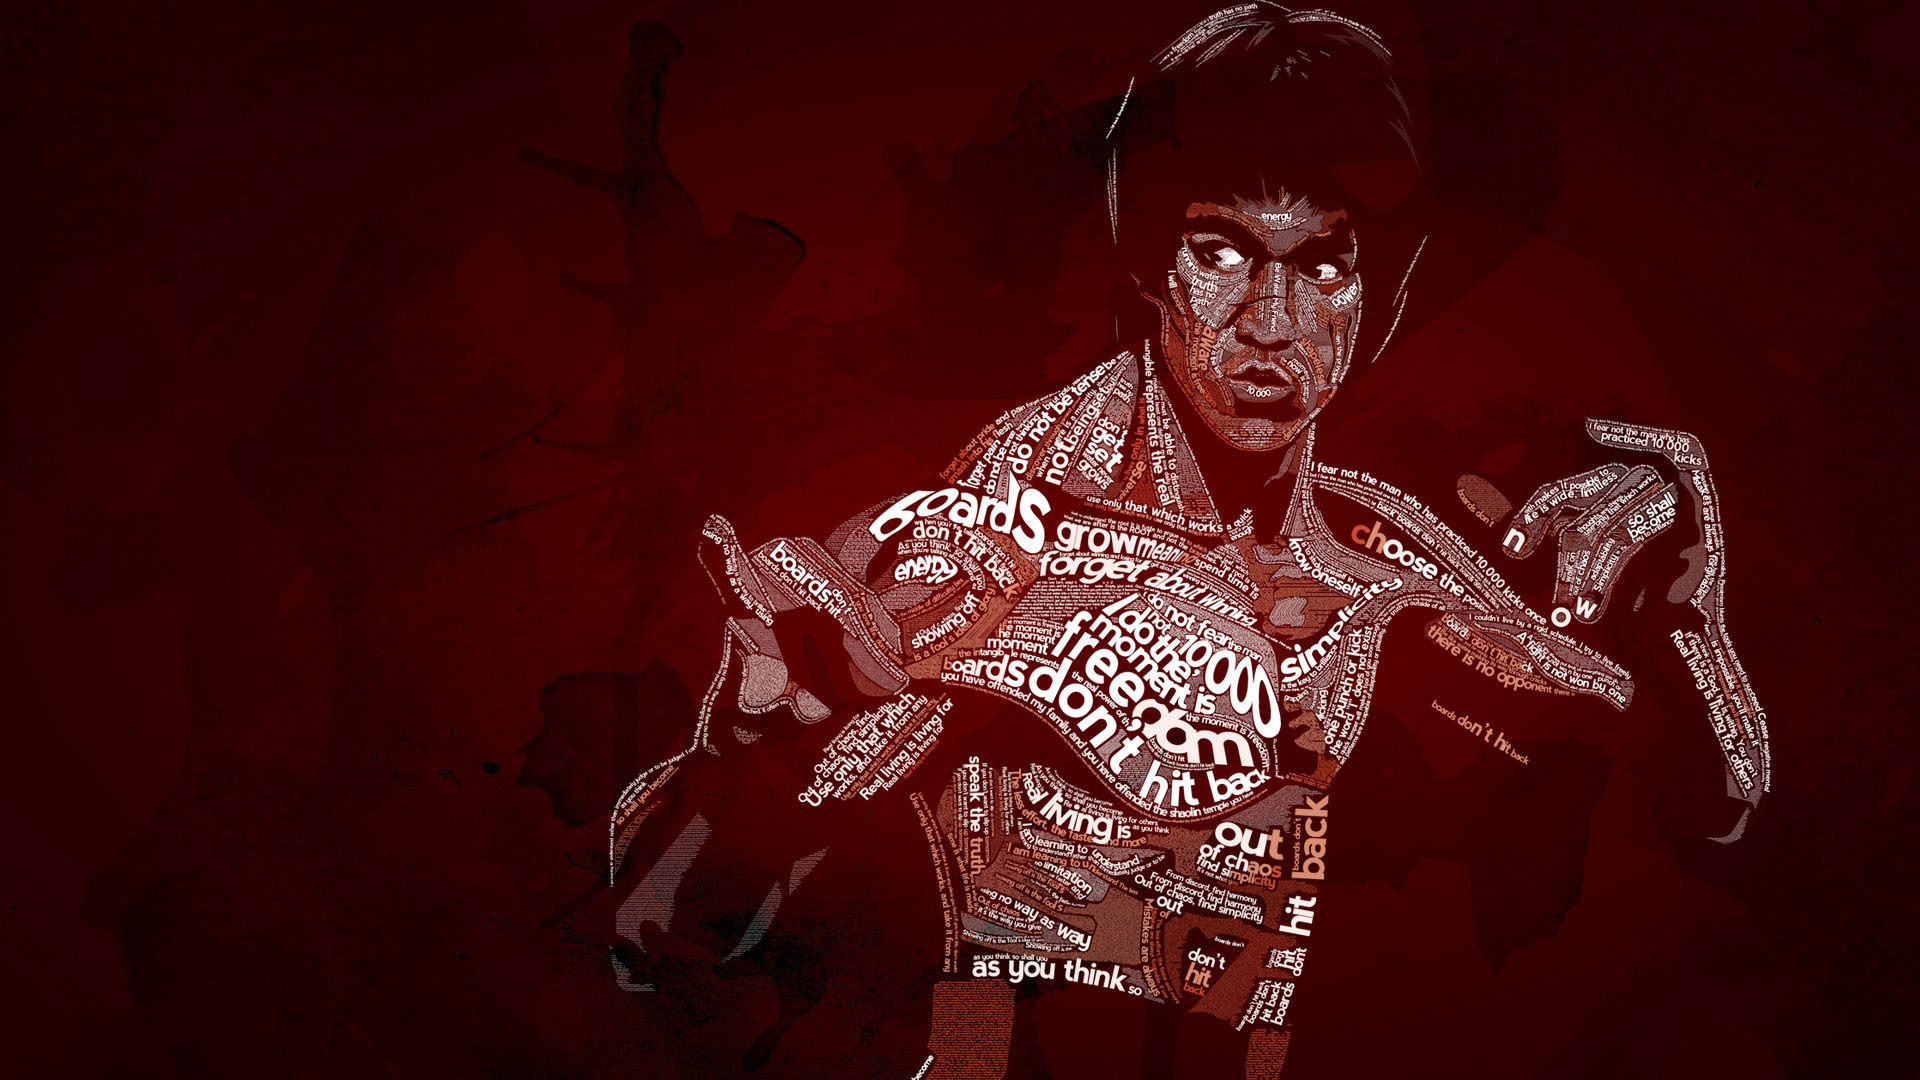 Fondos de Pantalla Bruce Lee Celebridad descargar imagenes